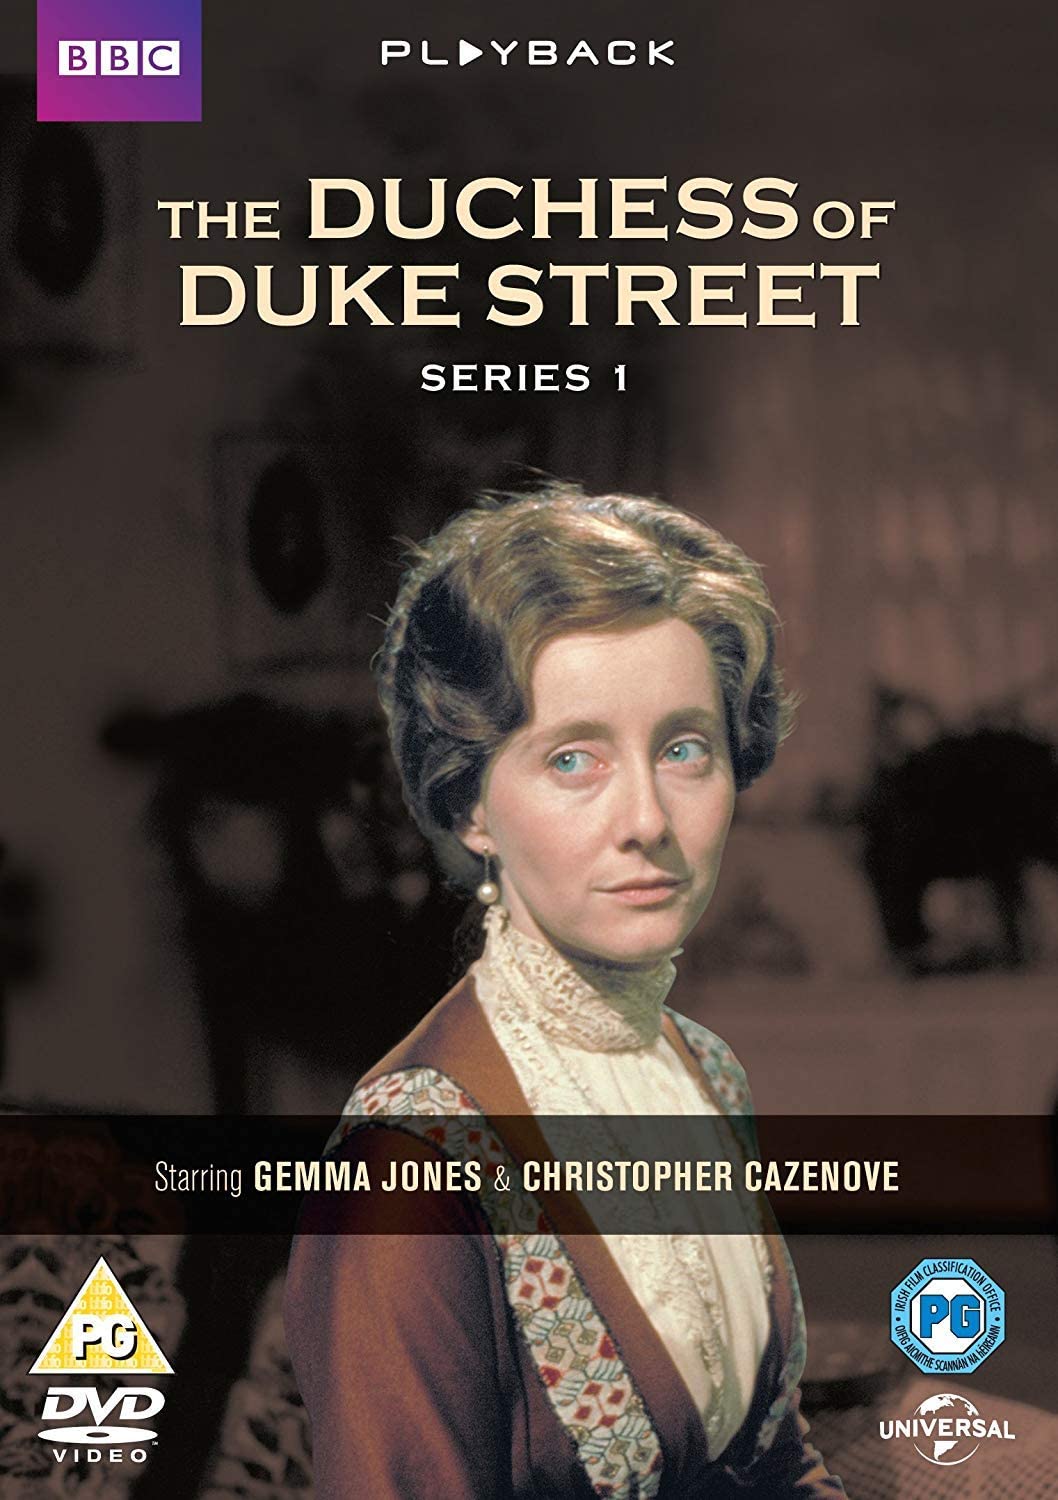 The Duchess of Duke Street - Series 1 [1976] - Drama [DVD]